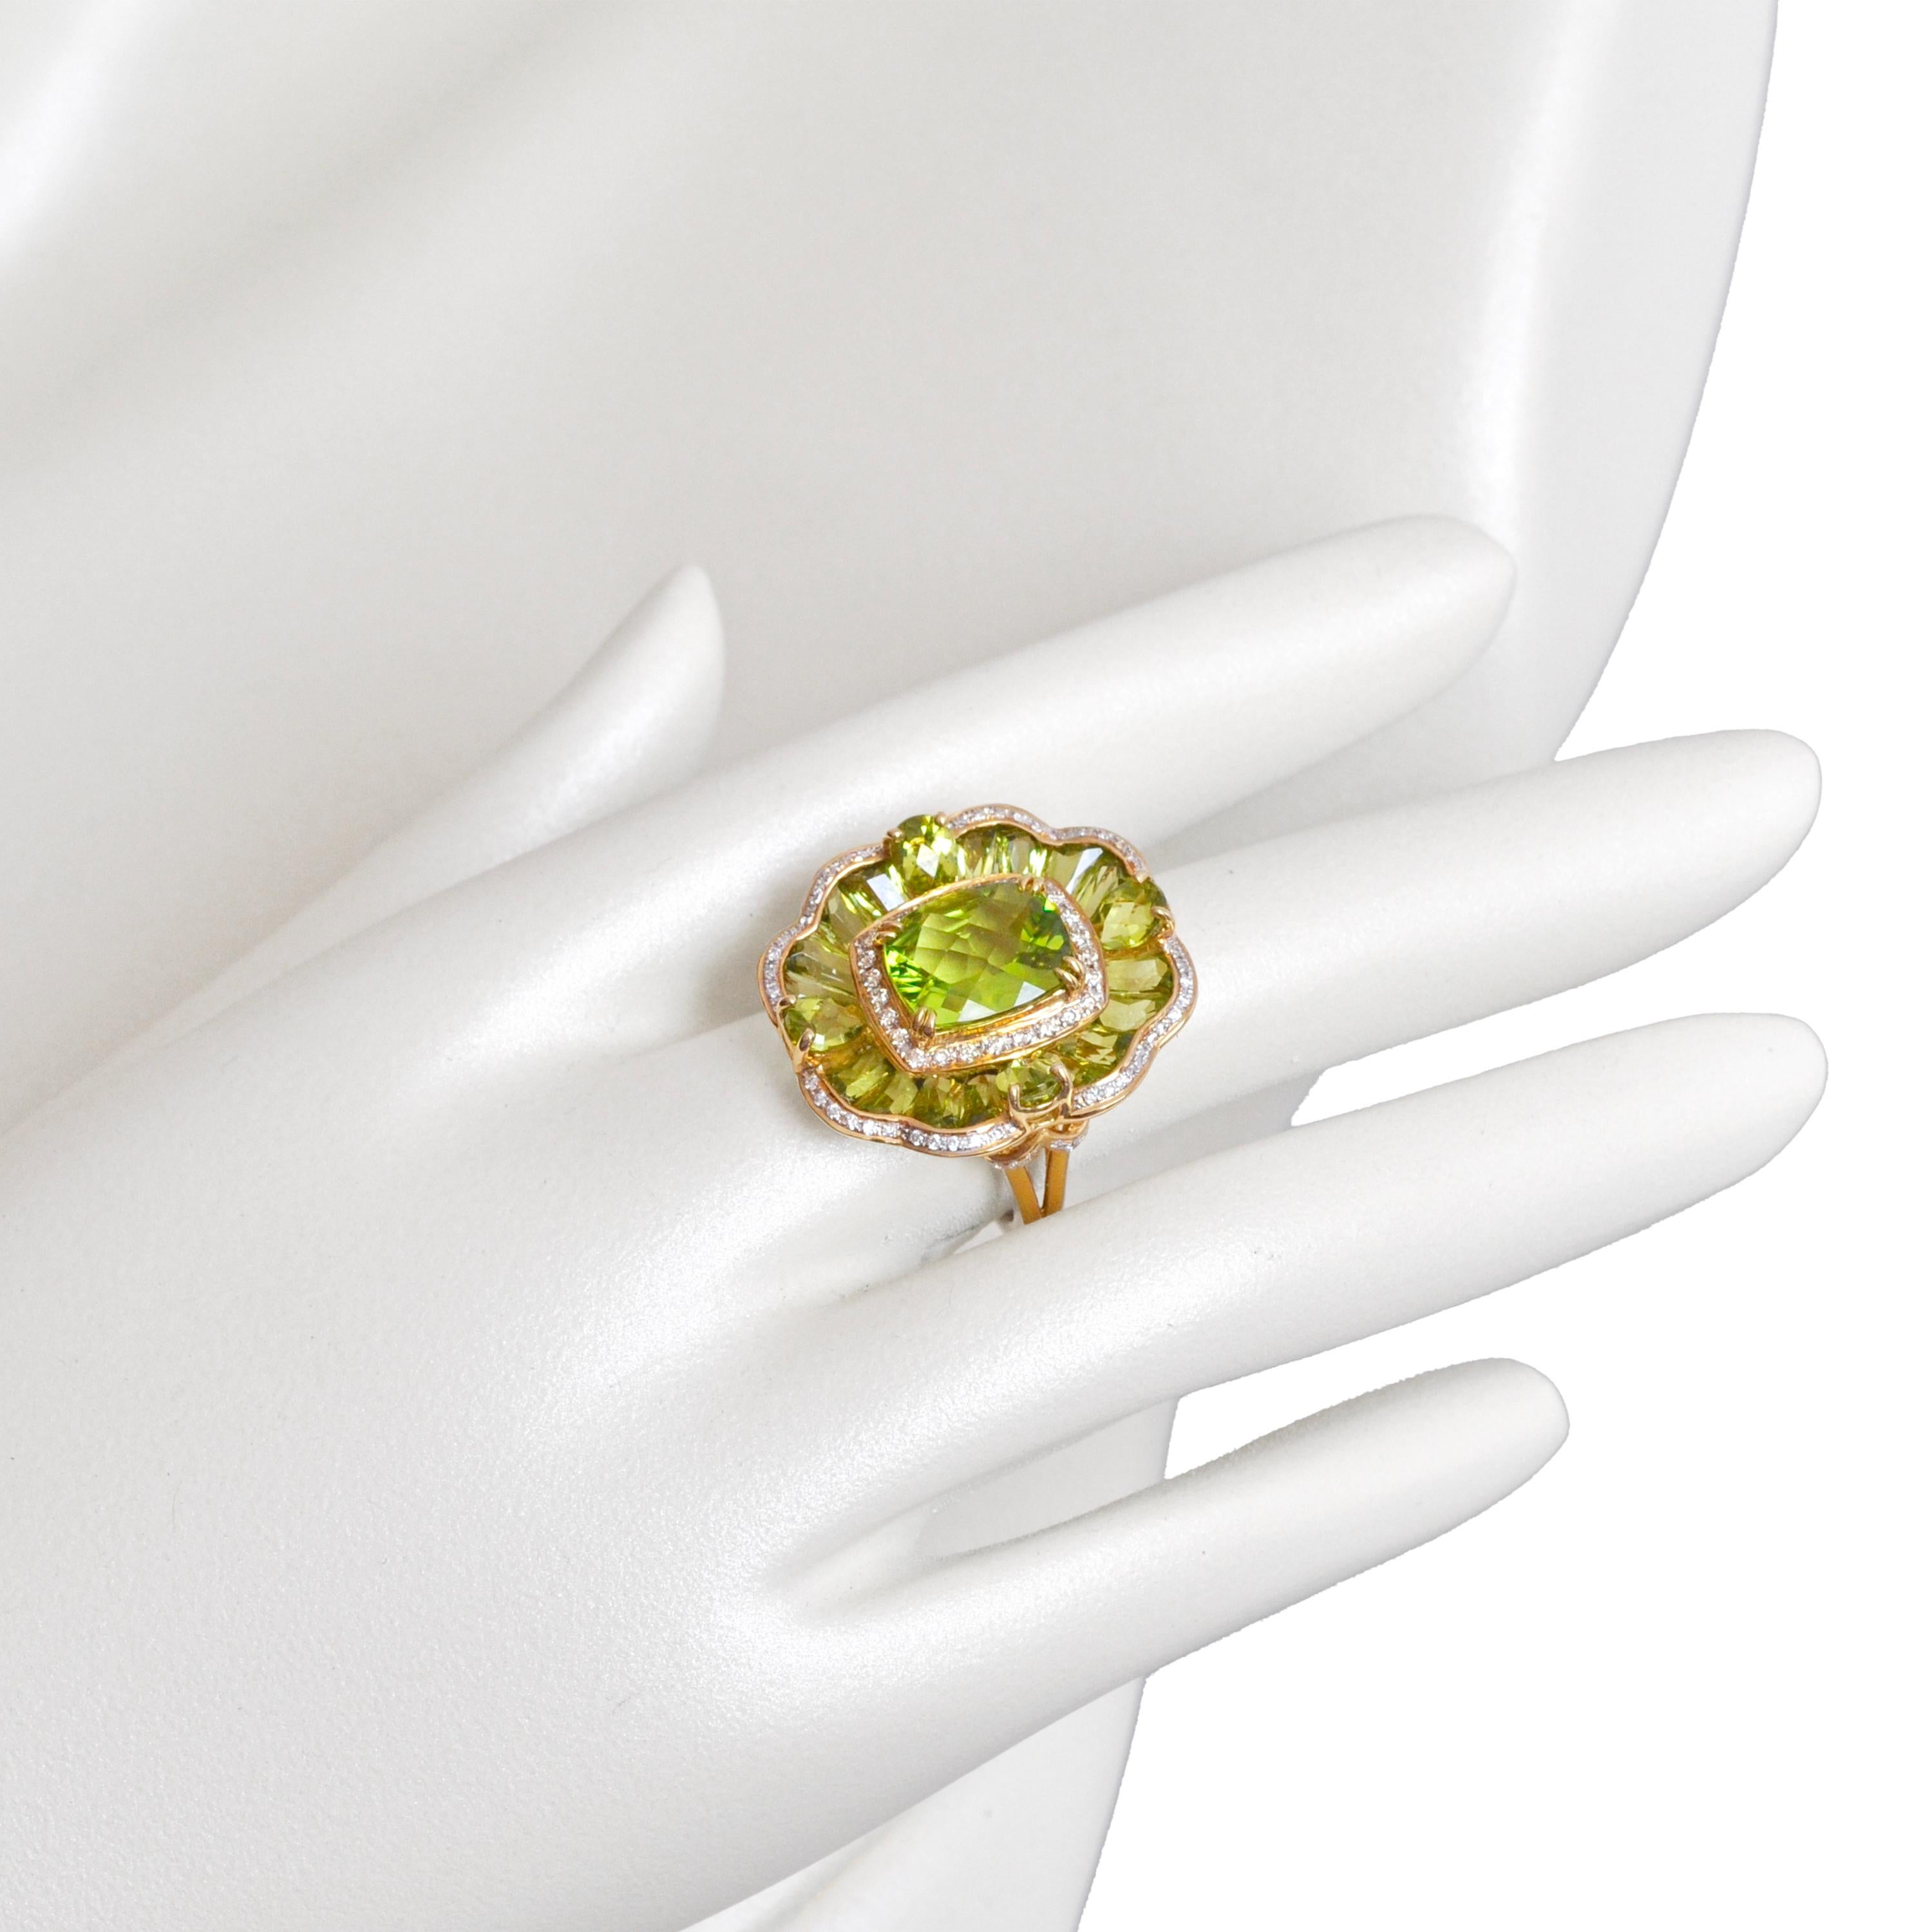 14 karat gelbgold peridot blume mit spezialschliff zeitgenössischer cocktailring

Dieser spitz zulaufende Peridot-Baguette-Ring aus 14-karätigem Roségold ist ein atemberaubendes Beispiel für lebendige Eleganz und zeitloses Design. Dieser Ring aus